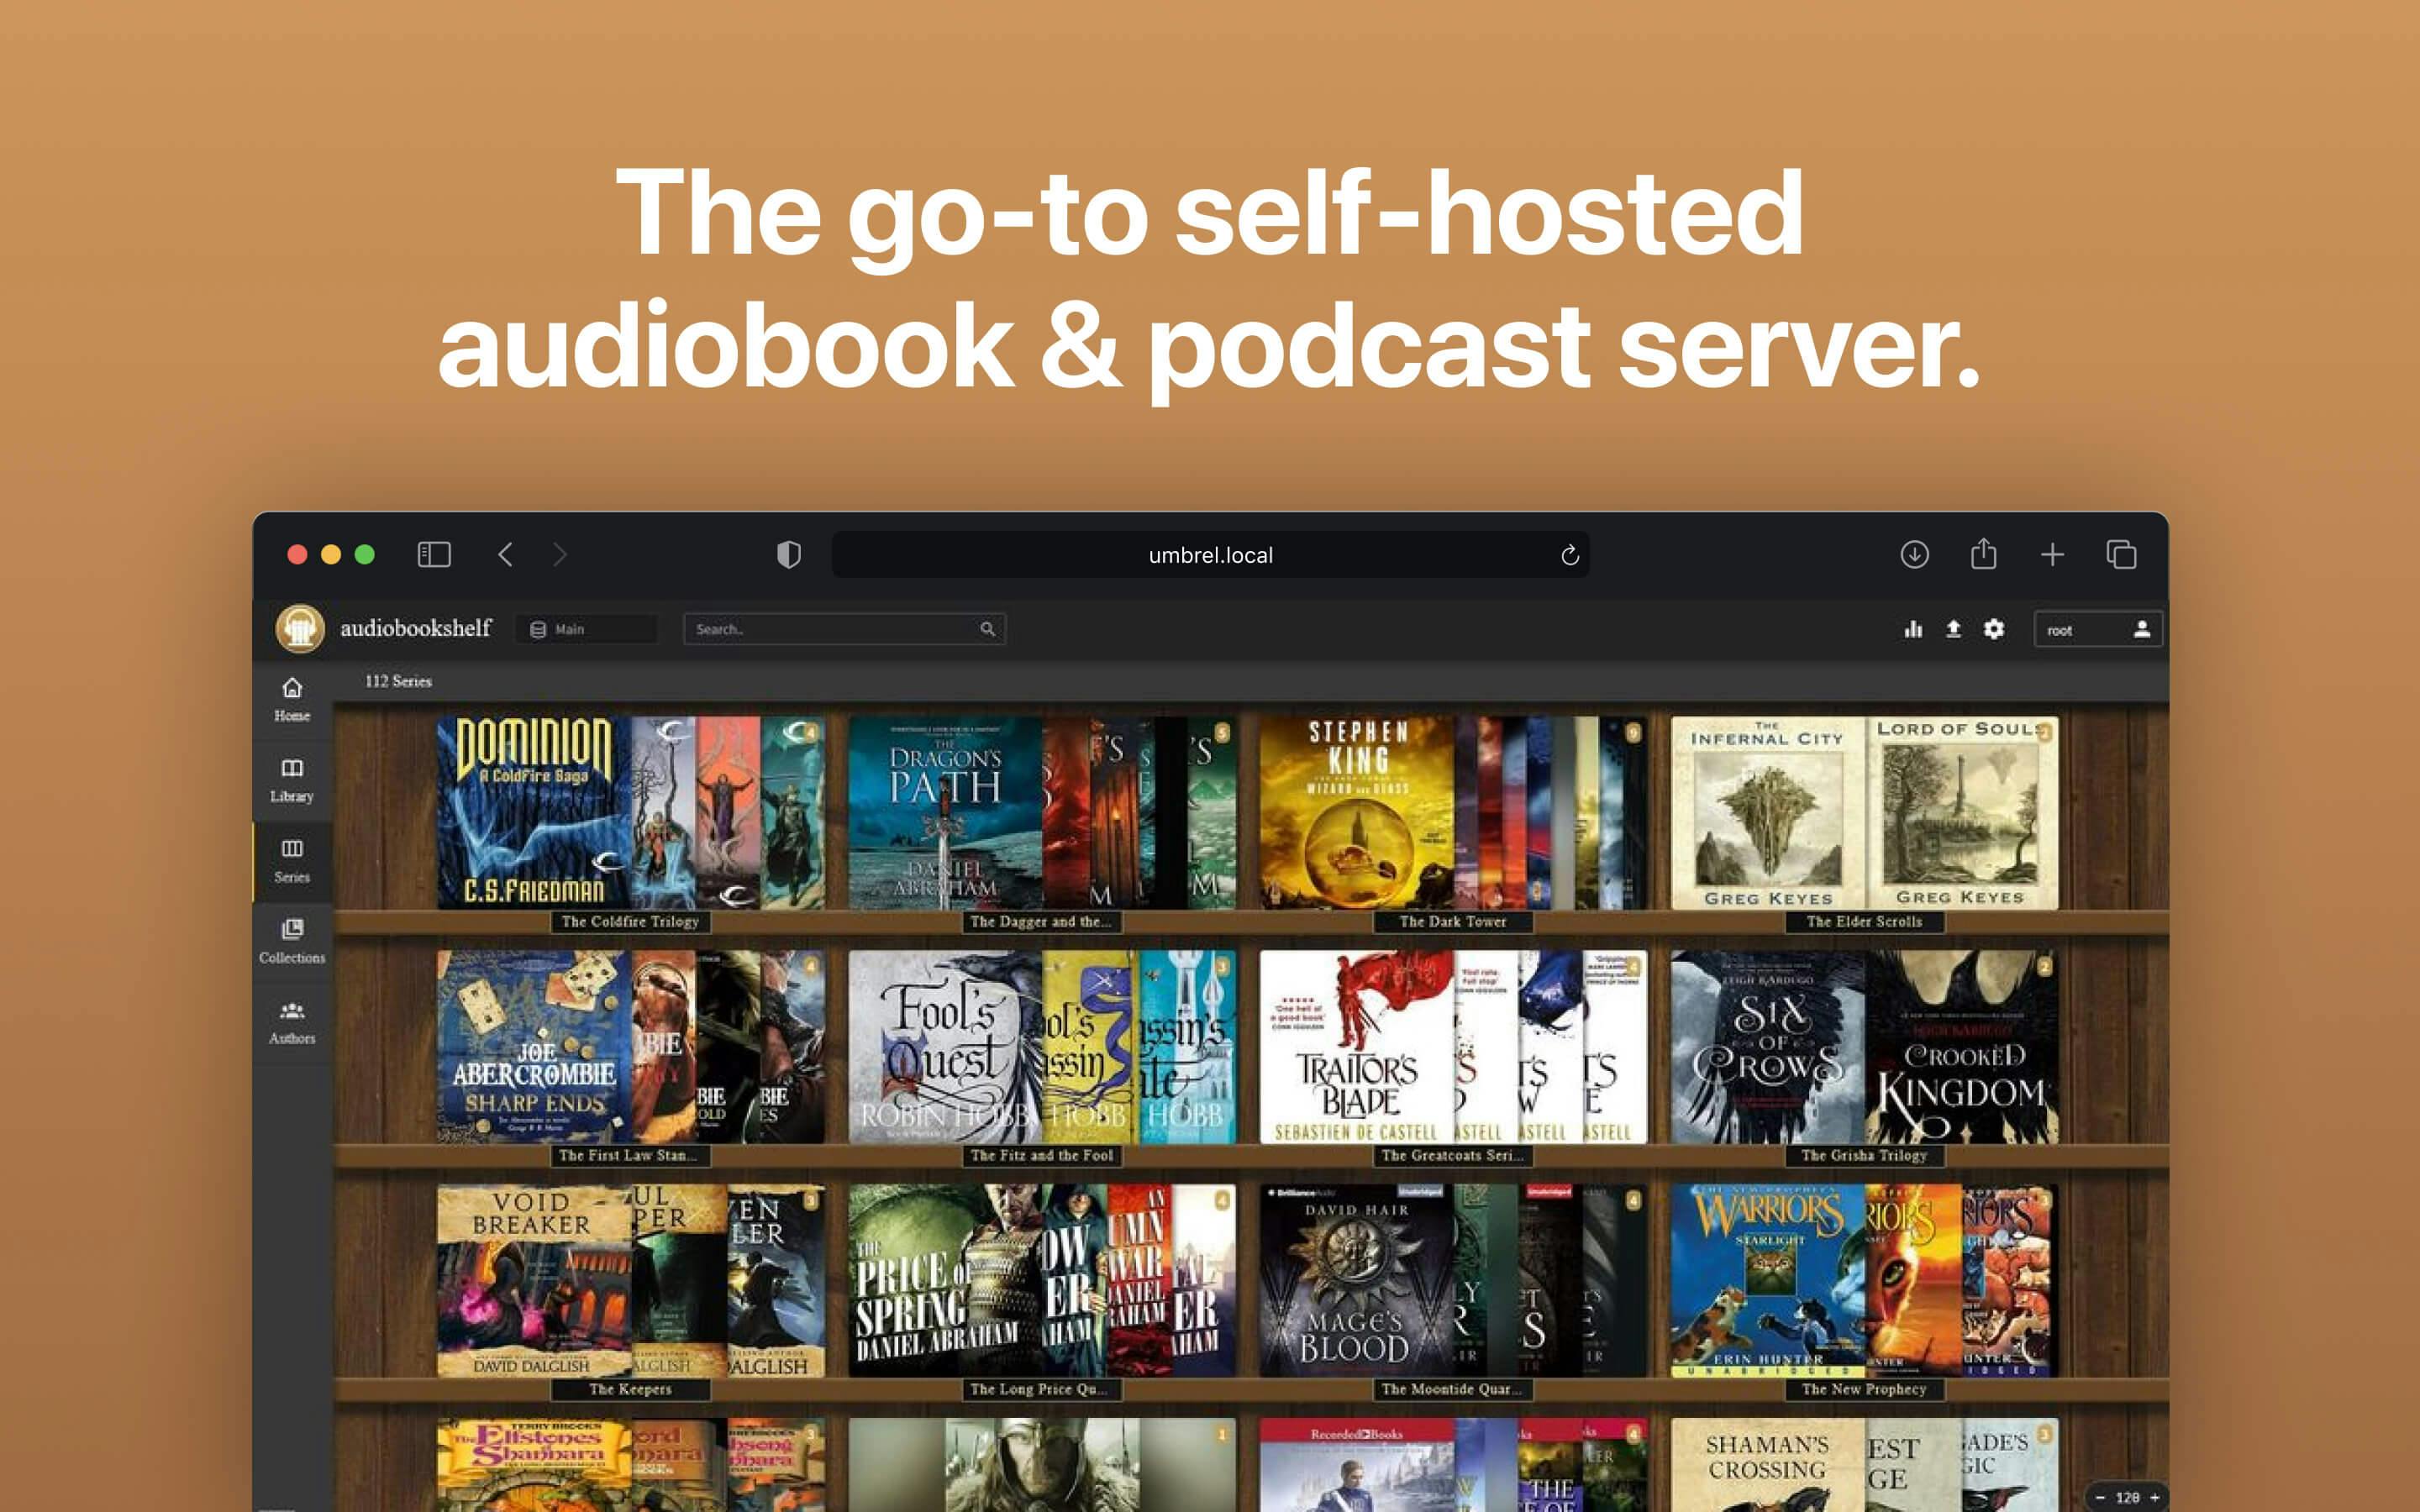 Screenshot 1 of Audiobookshelf app on Umbrel App Store